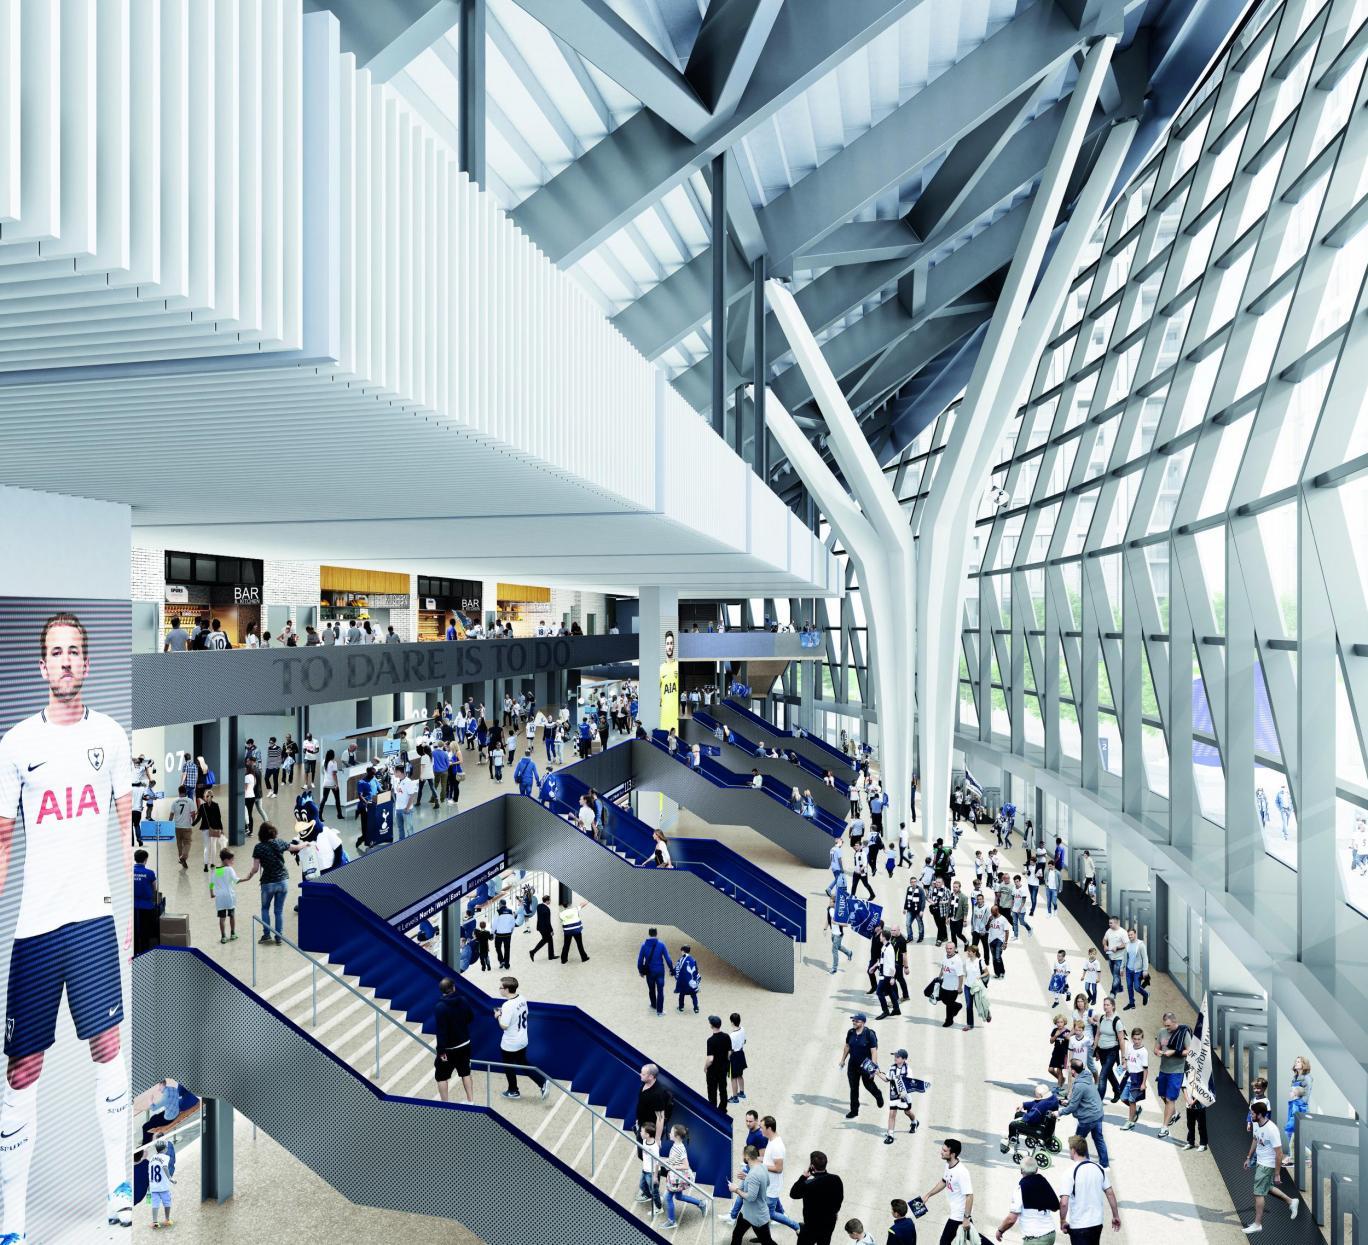 Revealed: Brand new renderings of Tottenham Hotspur's White Hart Lane home1368 x 1245